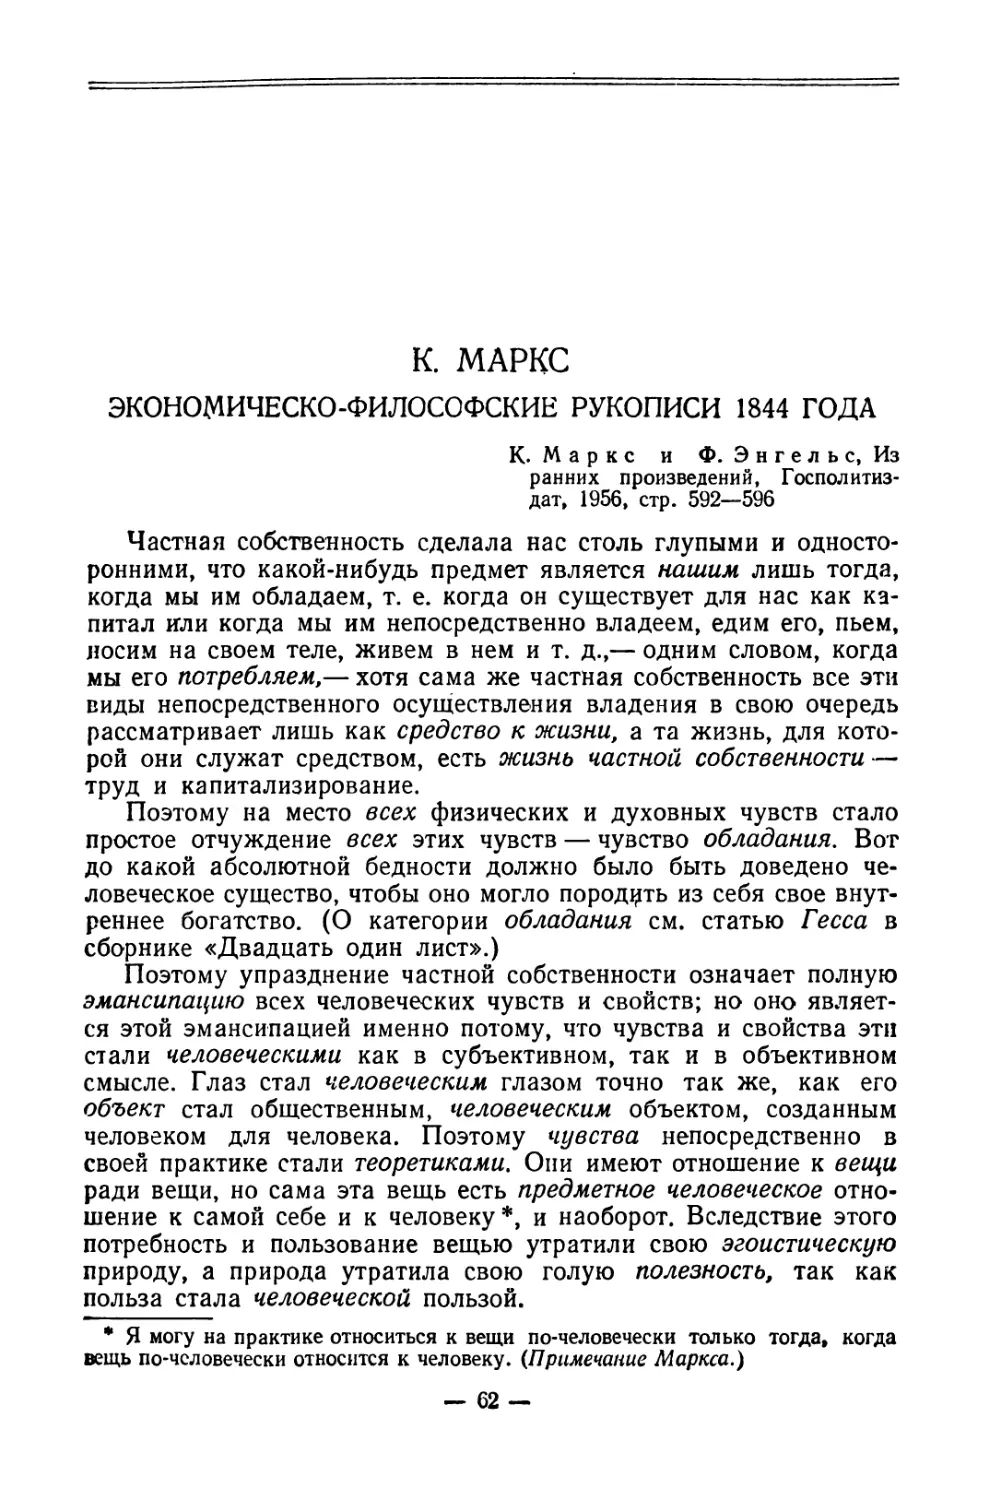 К. Маркс. Экономическо-философские рукописи 1844 года